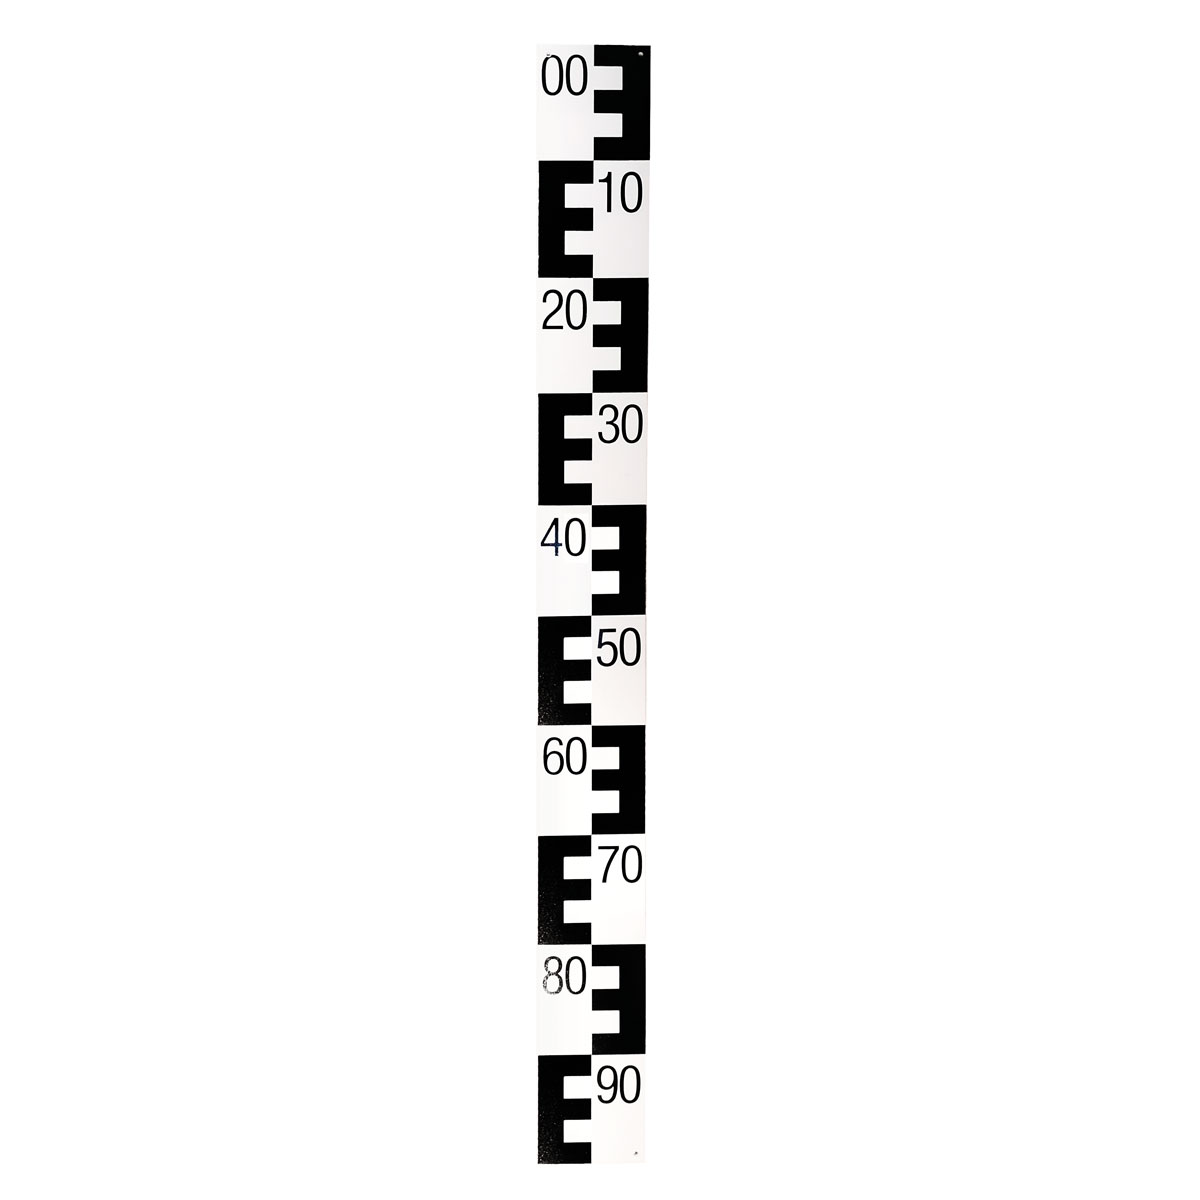 Pegellatte, Breite 10 cm, Länge 1m Ausführung flach, E-Teilung in dm